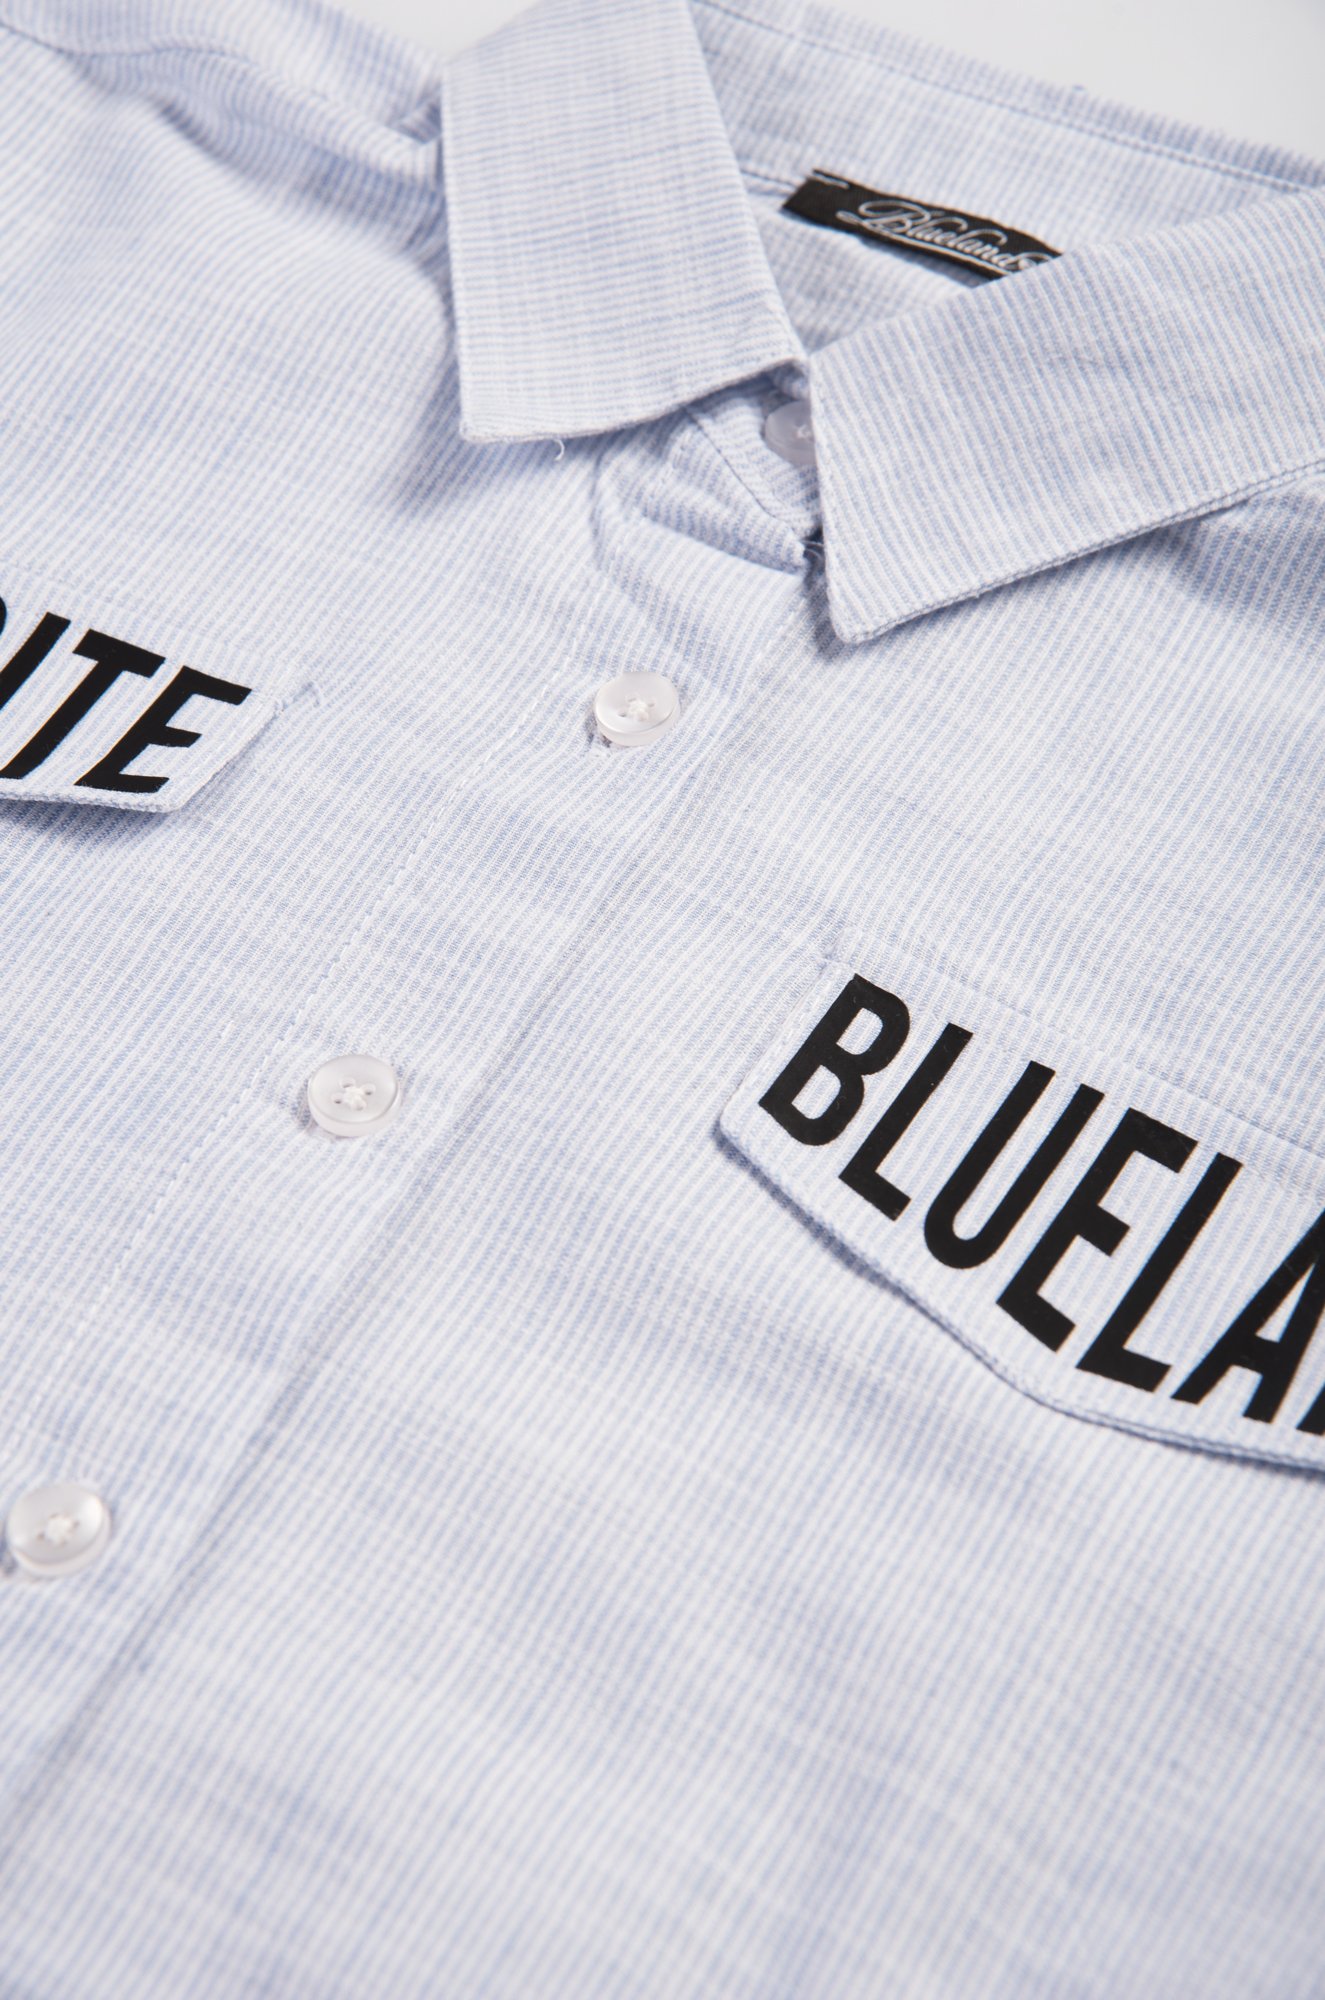 Блузка для девочки Blueland